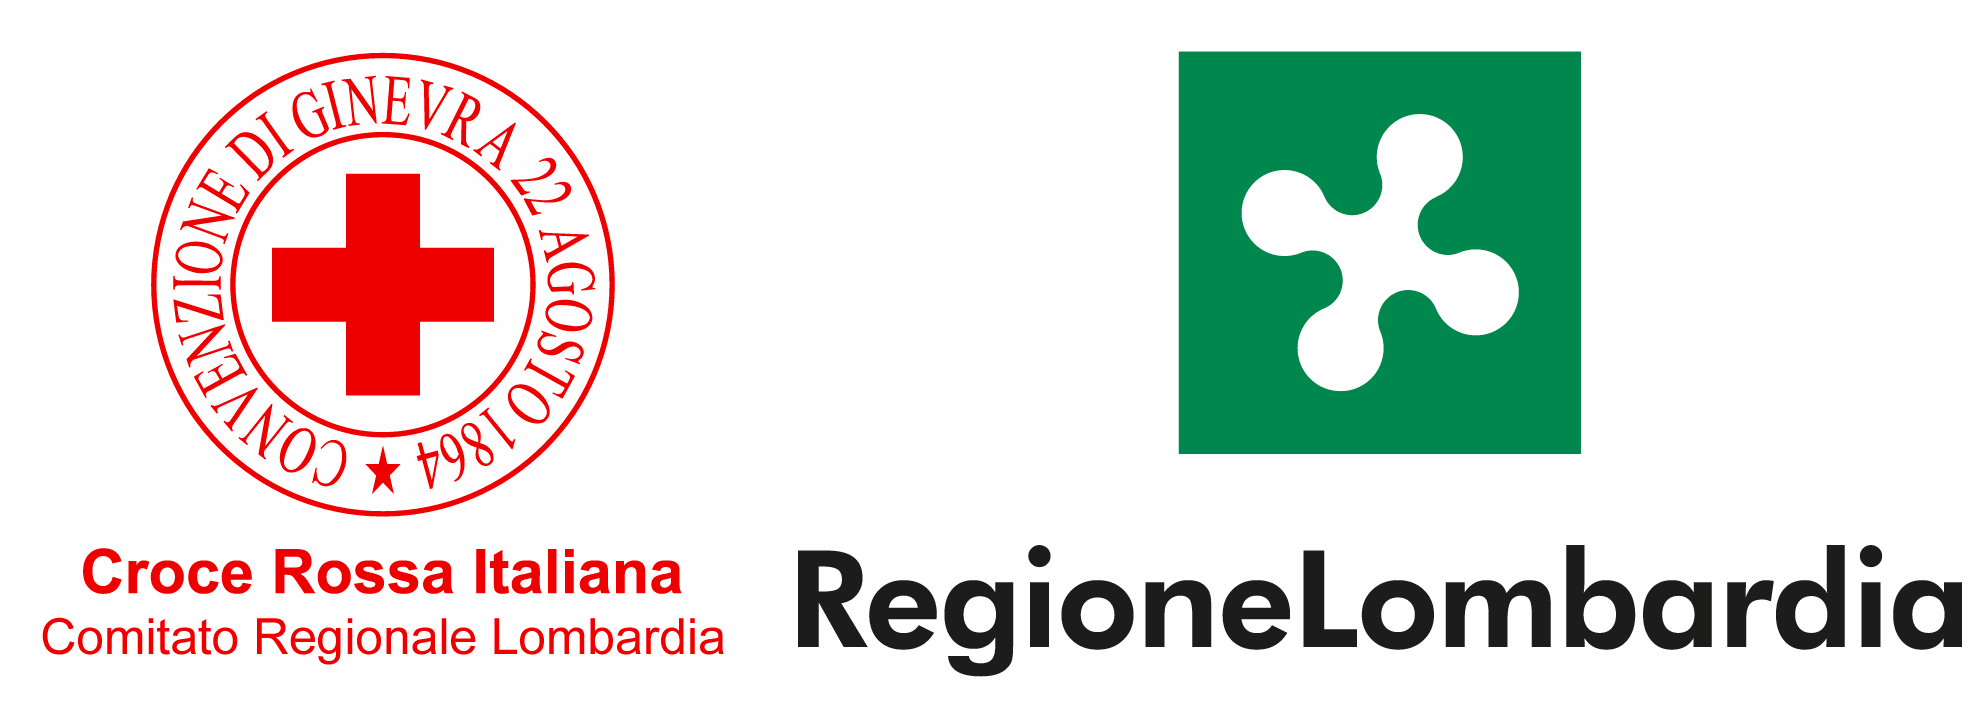 Croce Rossa Lombardia e Regione Lombardia uniti più che mai